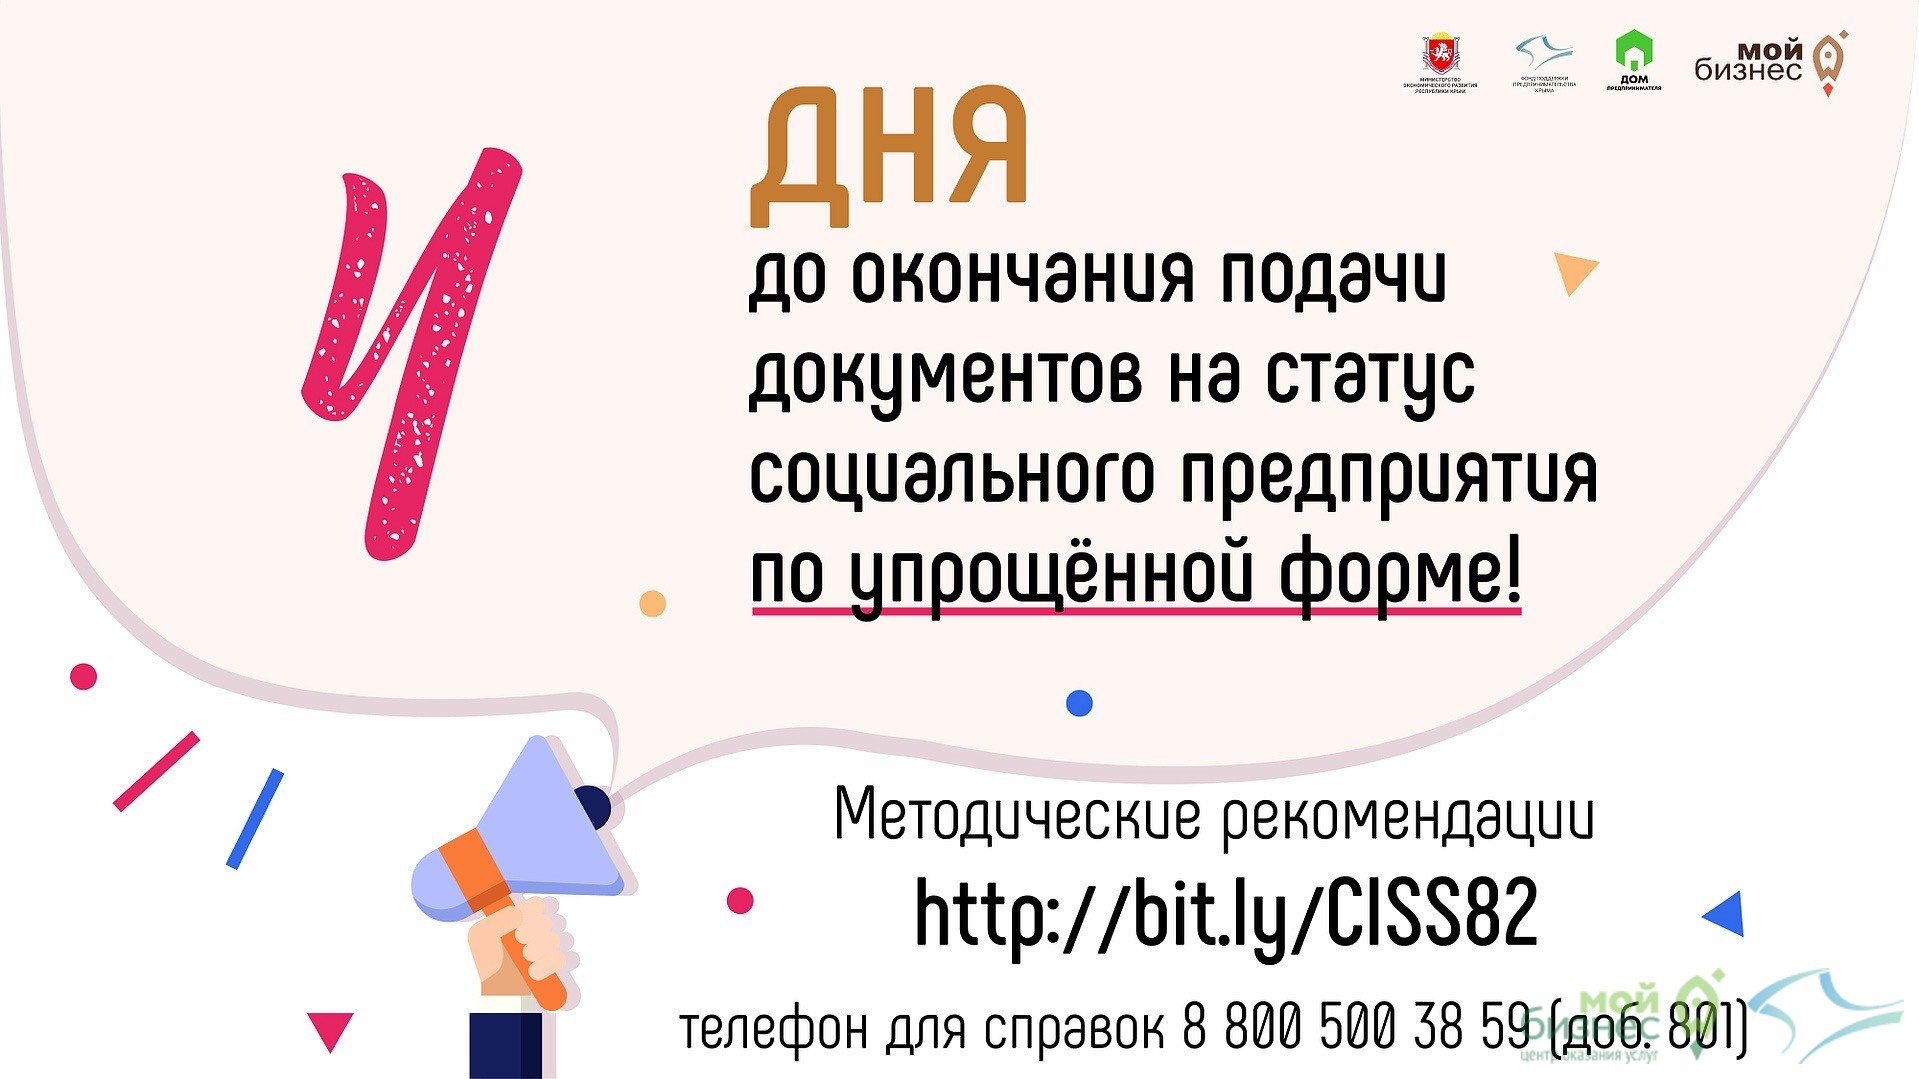 В Республике Крым идет прием документов на признание предпринимателей и юридических лиц социальными предприятиями